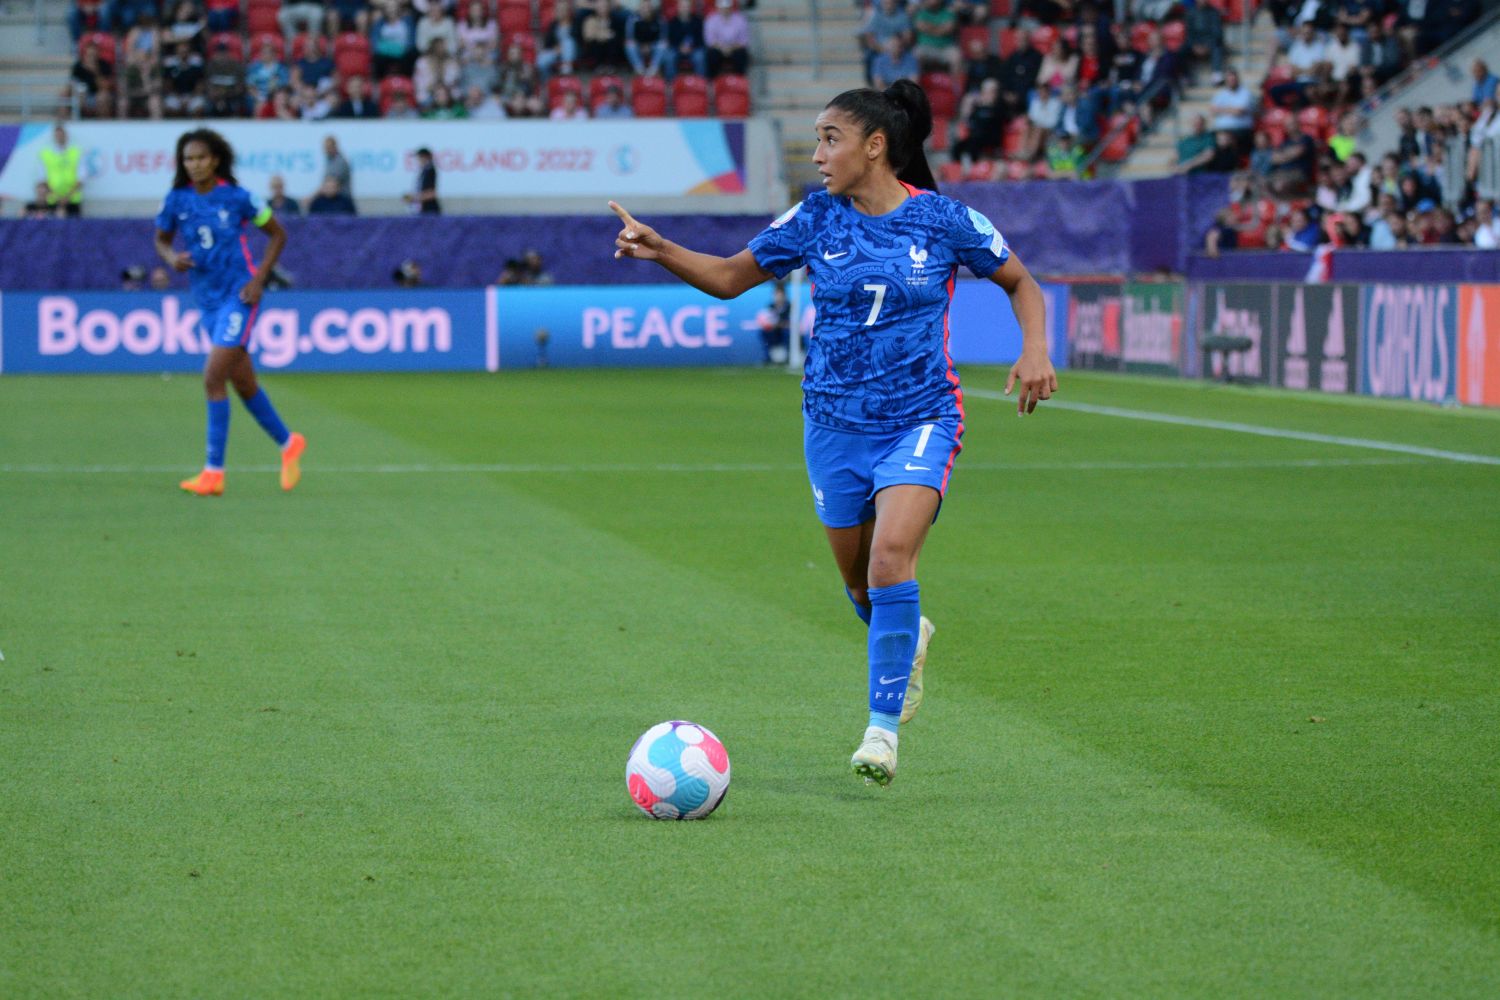 Rendez-vous en huitièmes de finale du mondial de foot féminin pour les Bleues